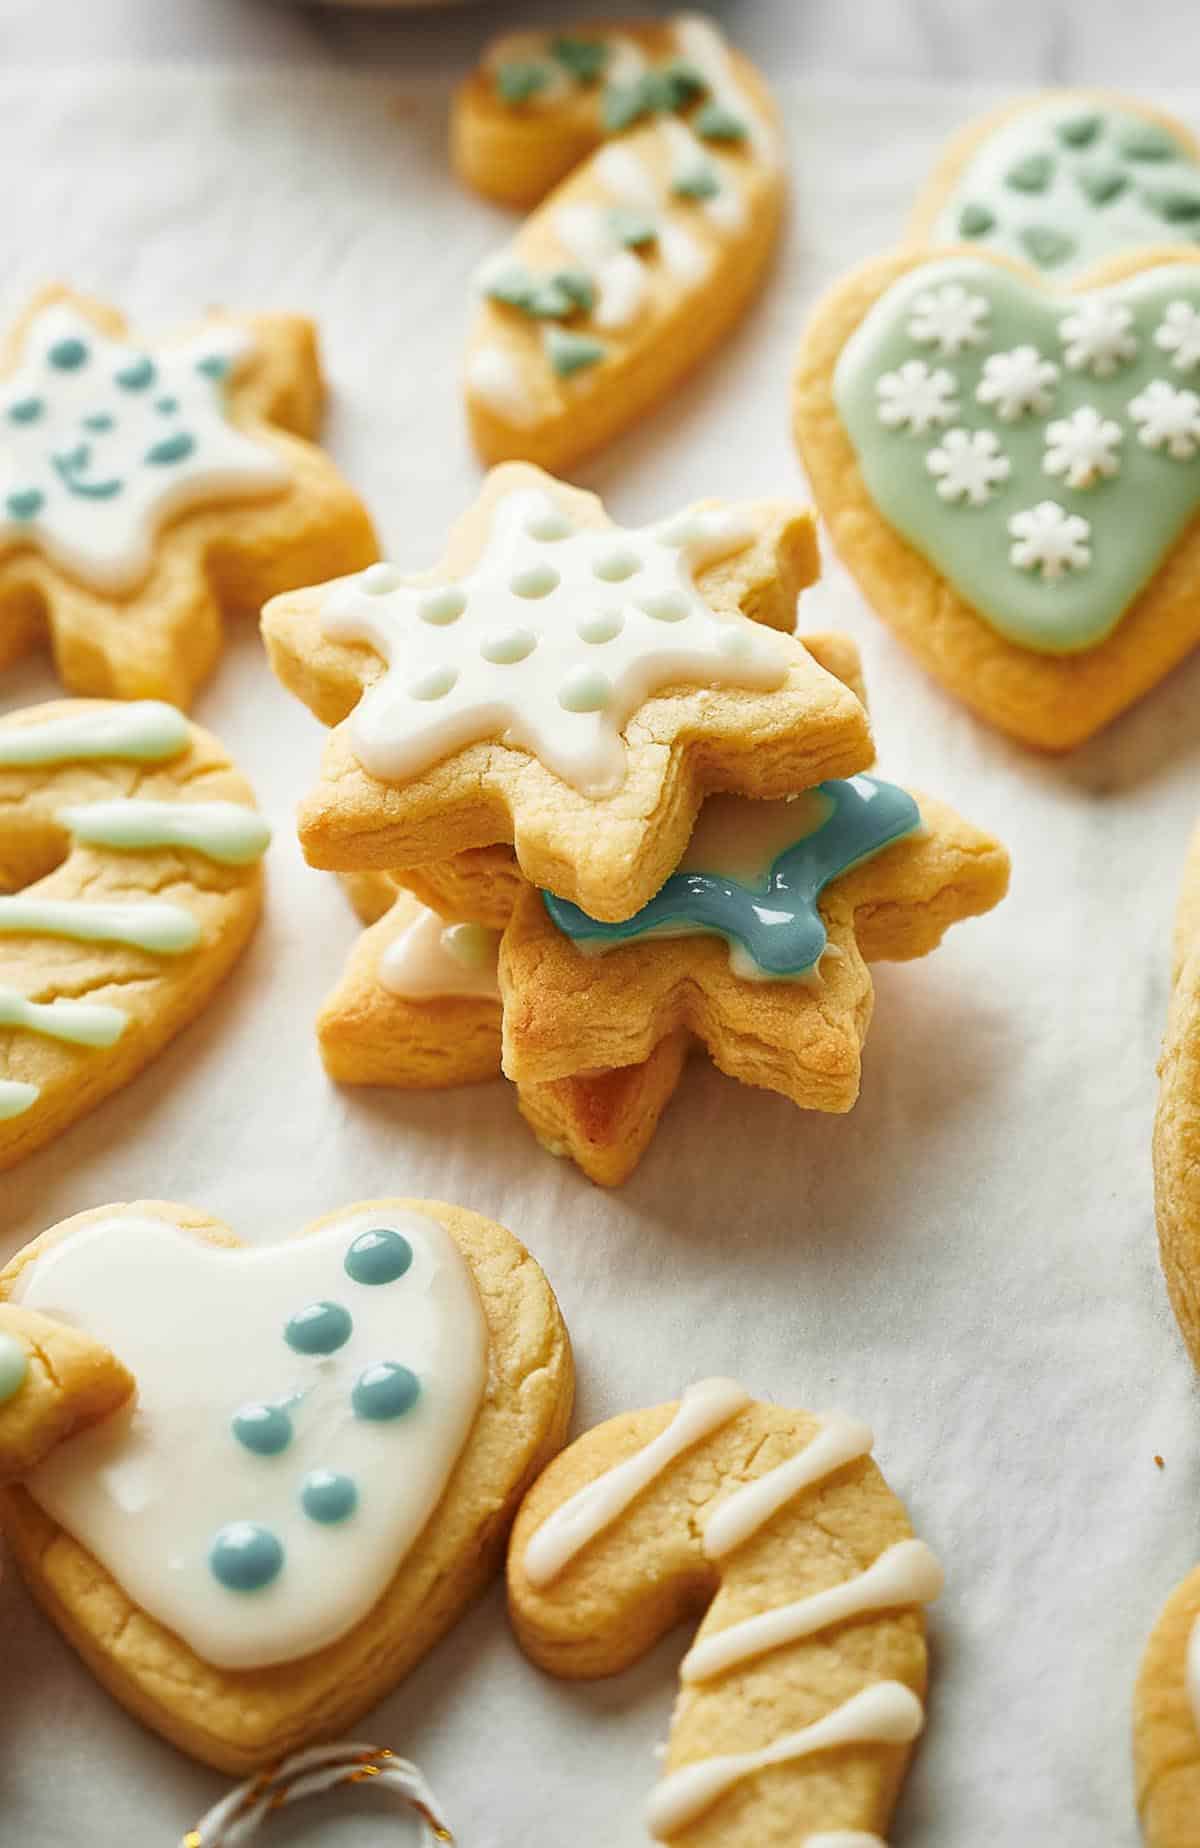 Freshly decorated Christmas sugar cookies.